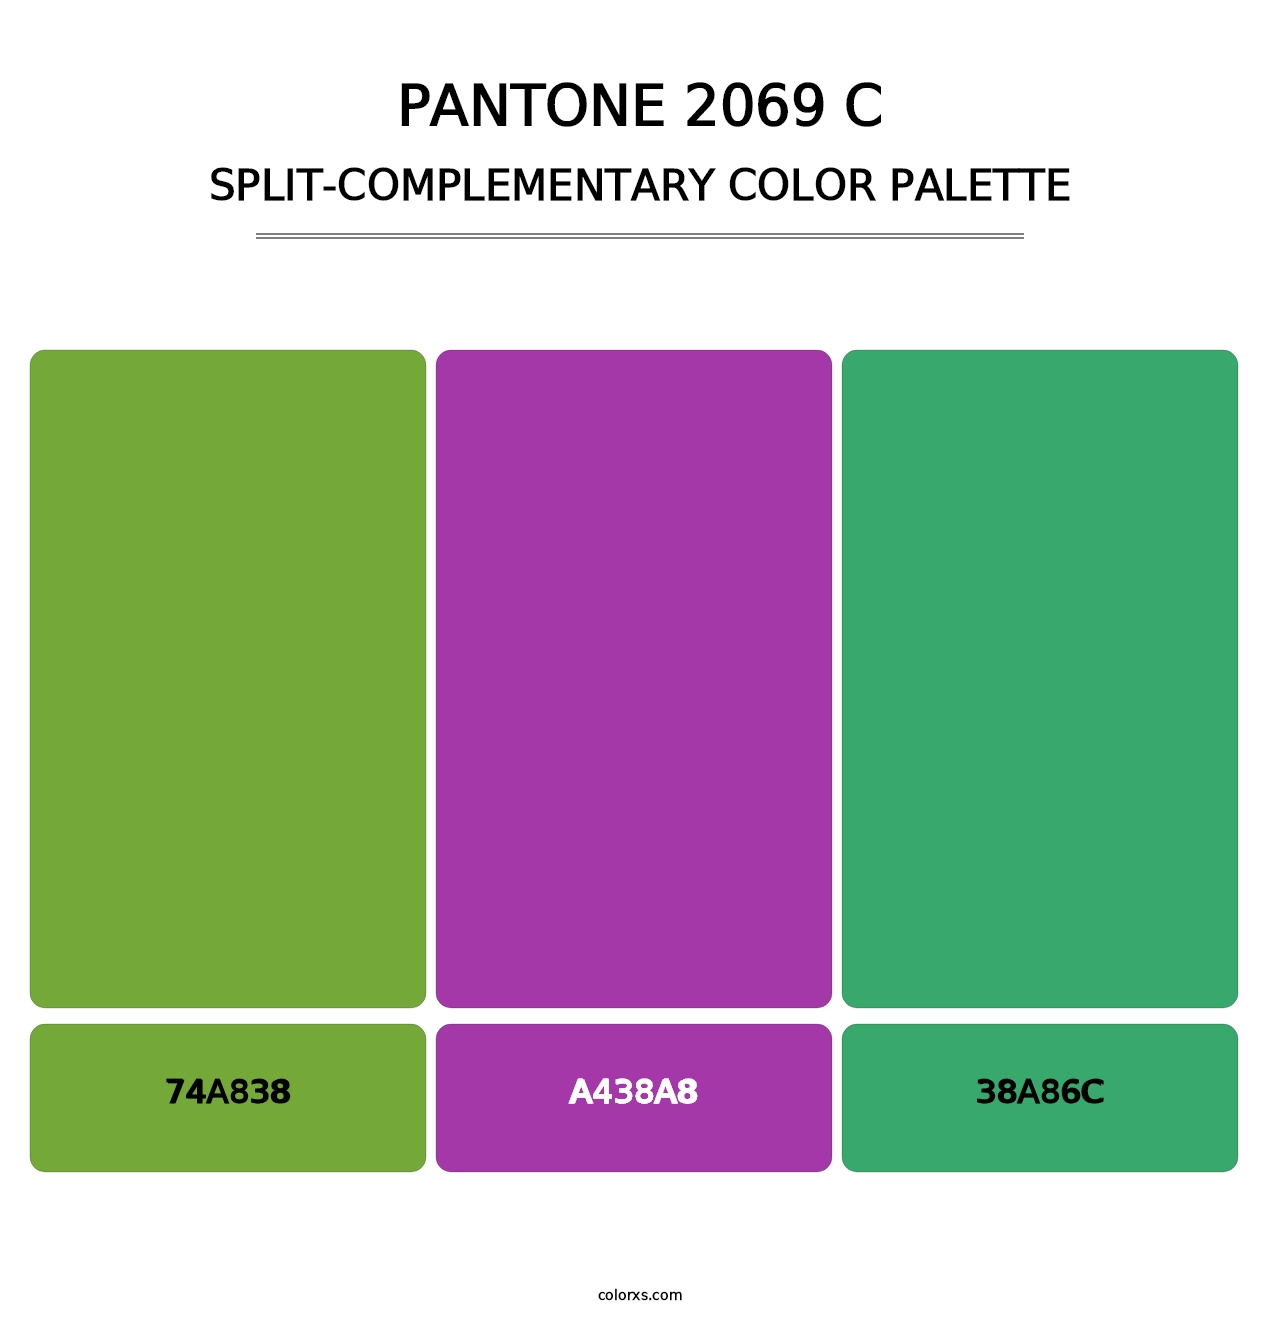 PANTONE 2069 C - Split-Complementary Color Palette